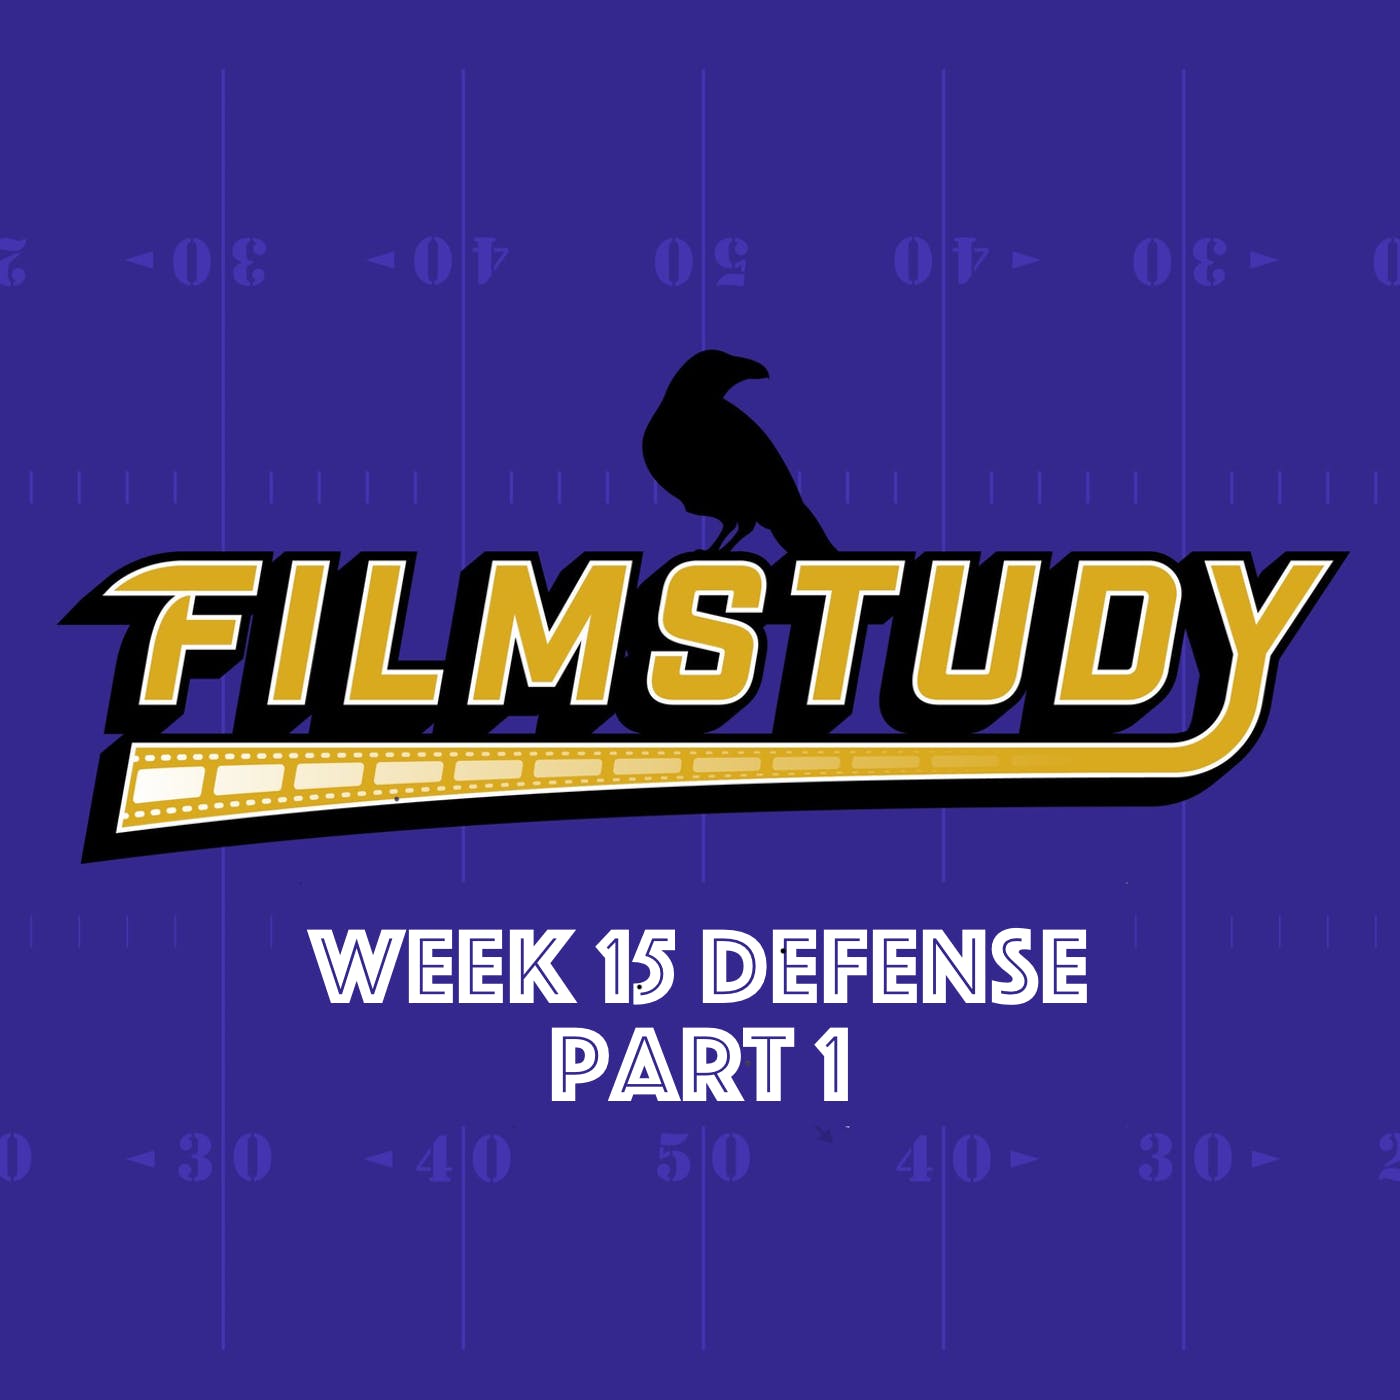 Week 15 Defense Part 1